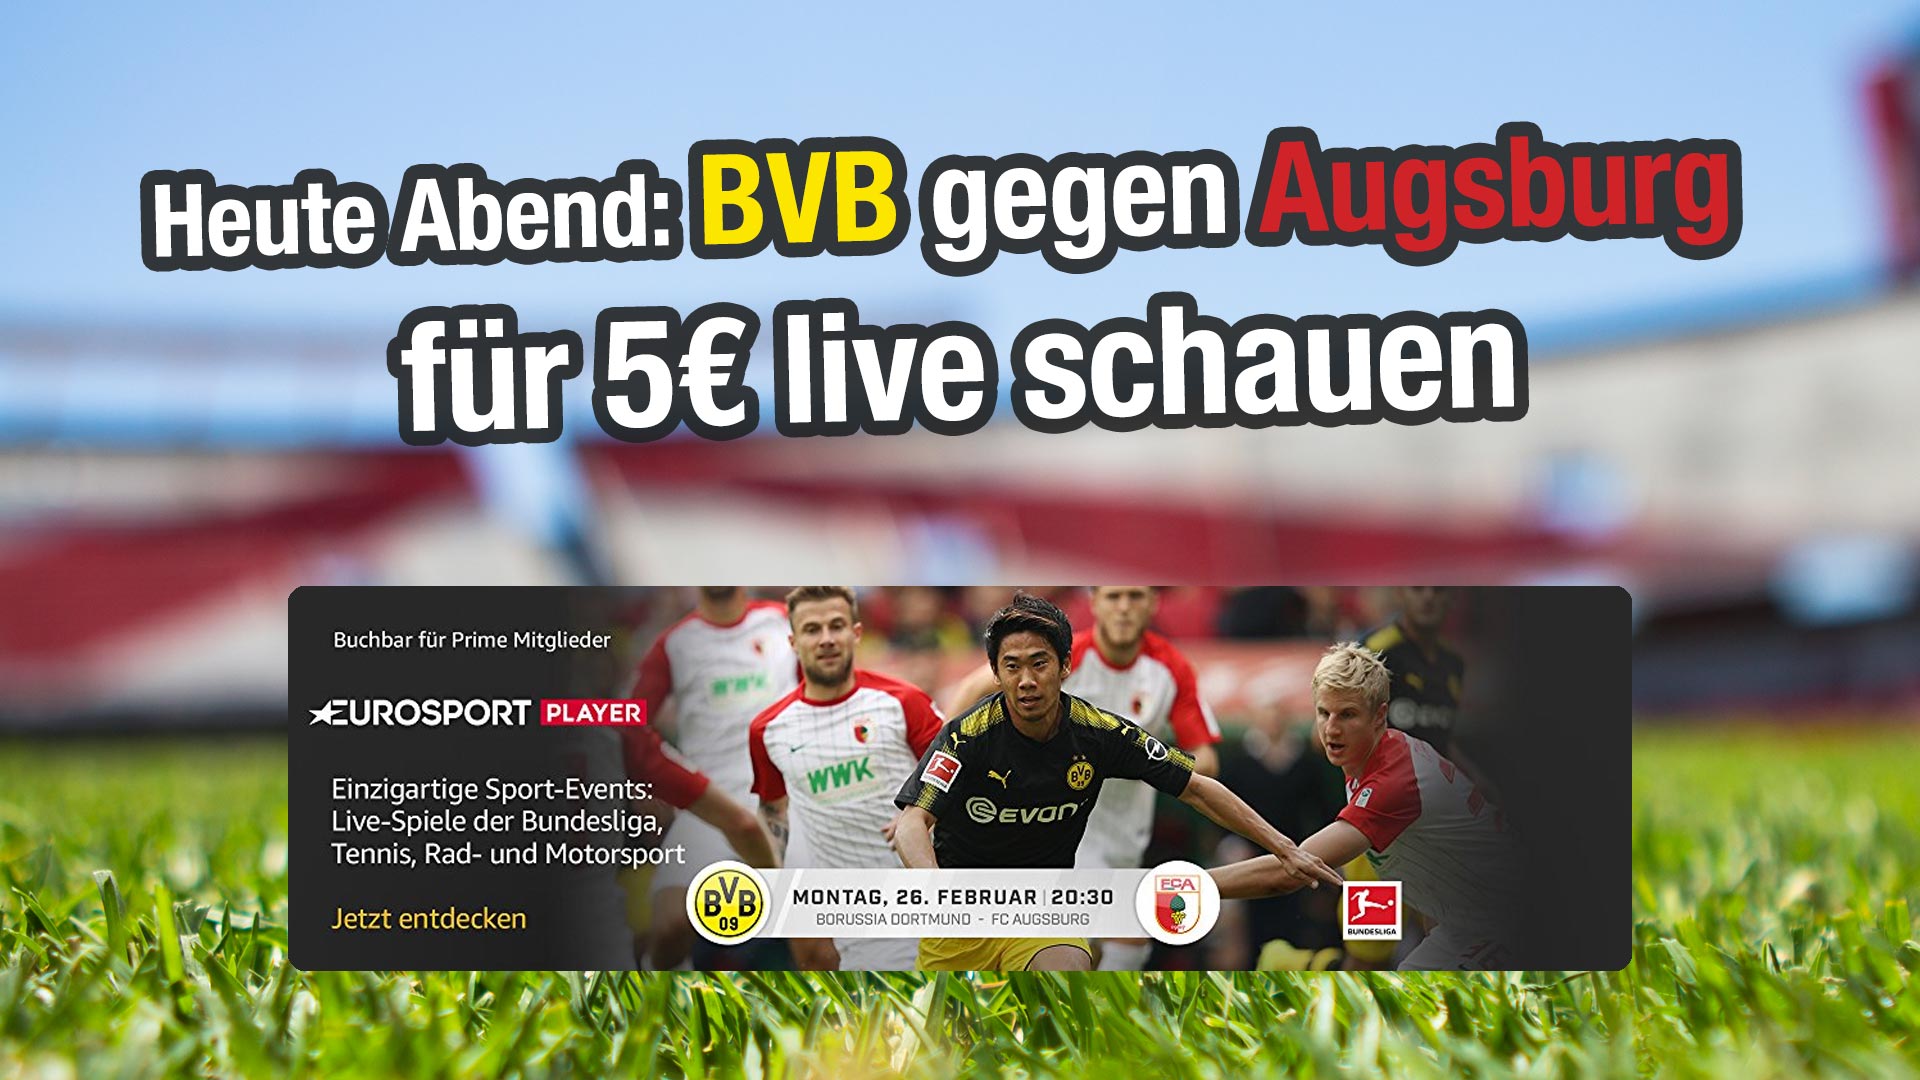 Heute Abend BVB gegen Augsburg für 5€ live anschauen #BVBFCA